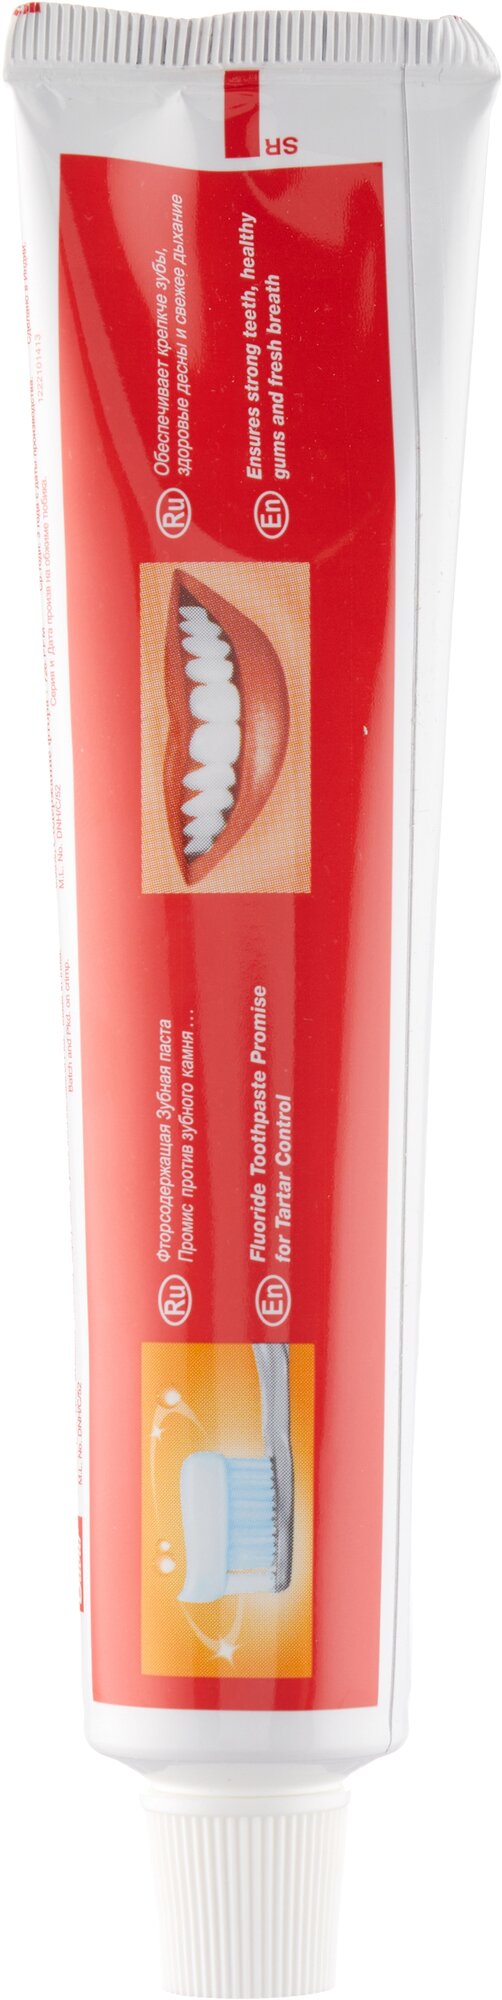 Dabur Зубная паста «Промис» от зубного камня, 100 г